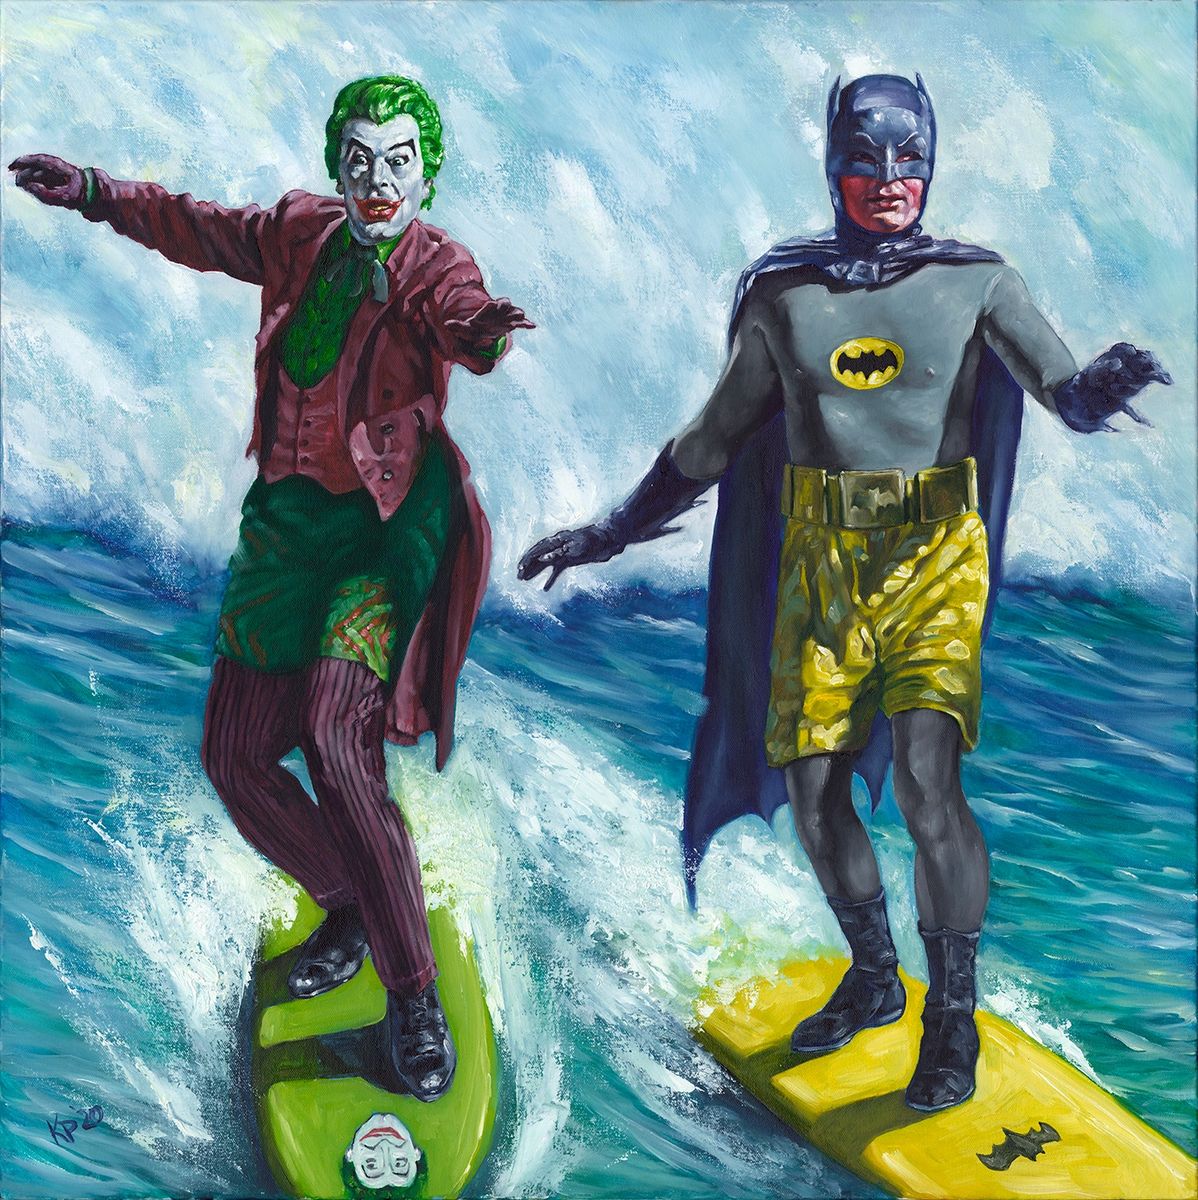 Surf's Up! Joker's Down!